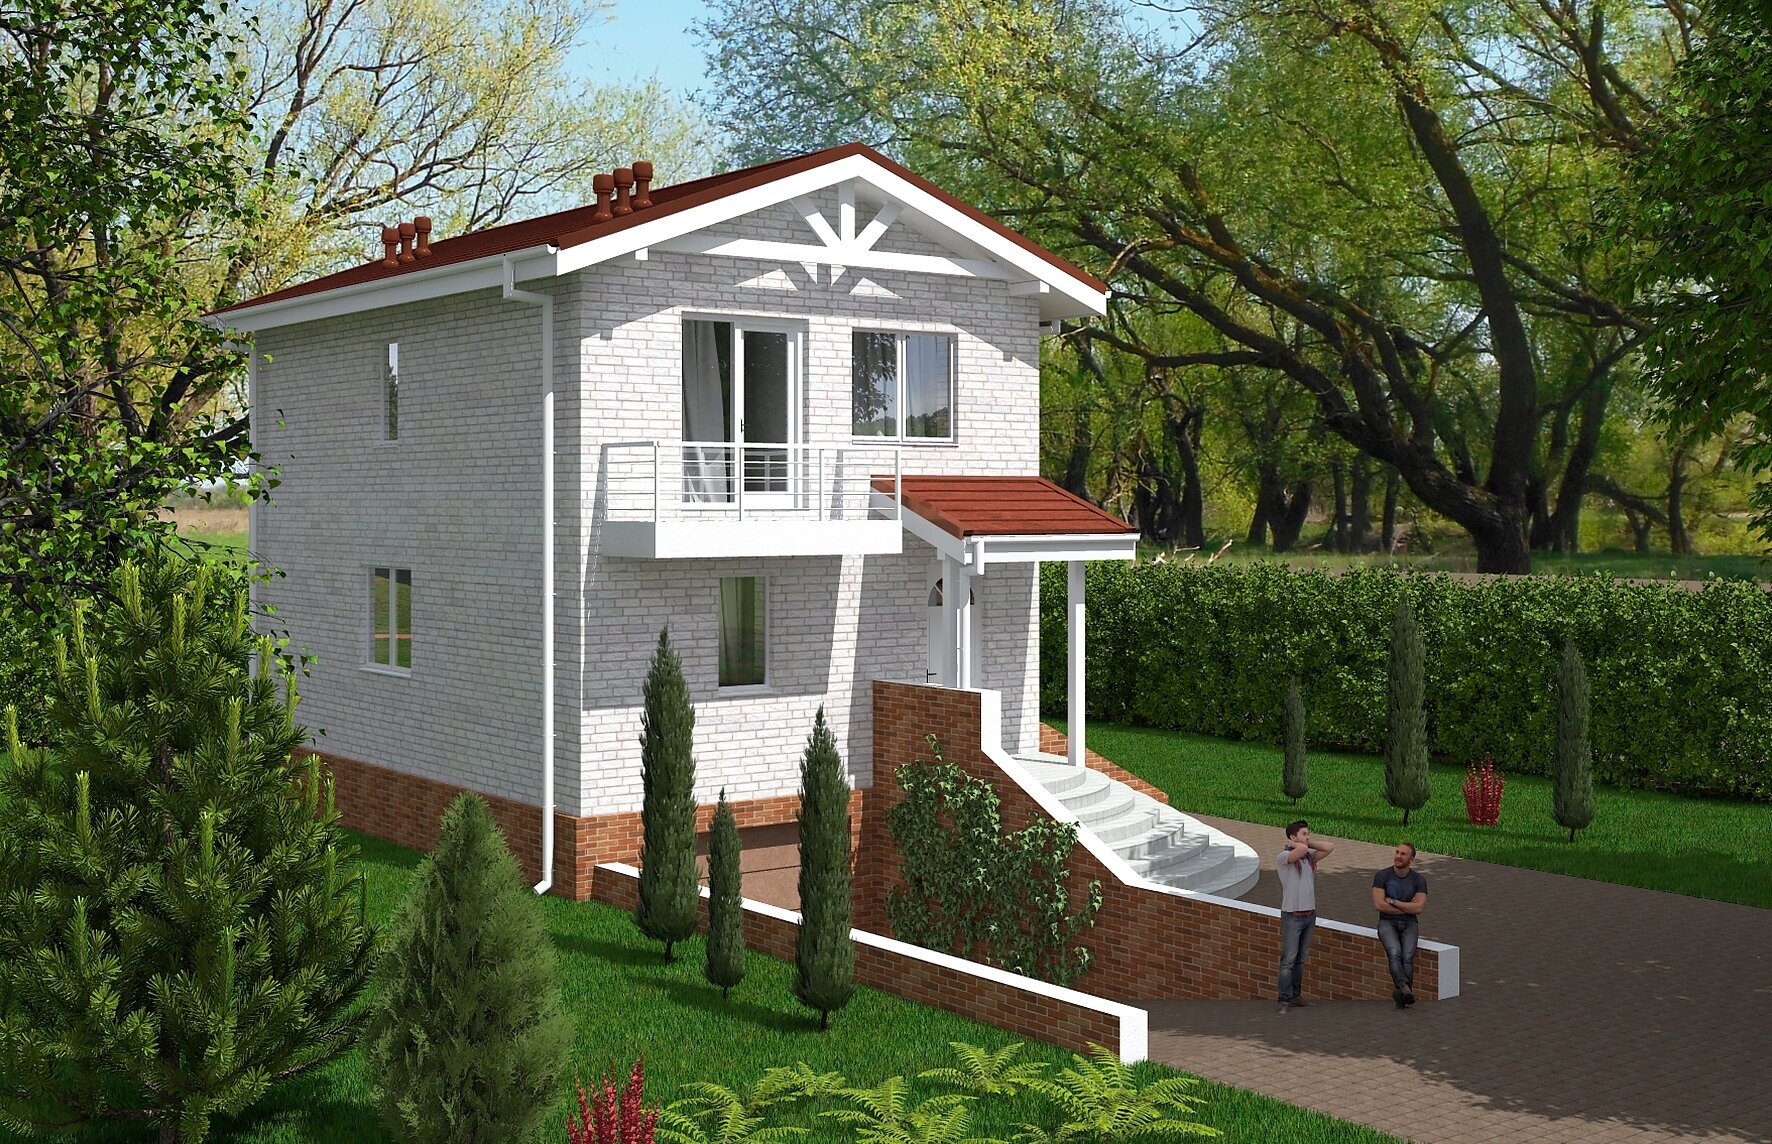 Проект двухэтажного дома с подвалом и гаражом (145 м2, 7м x 19м) Rg5528